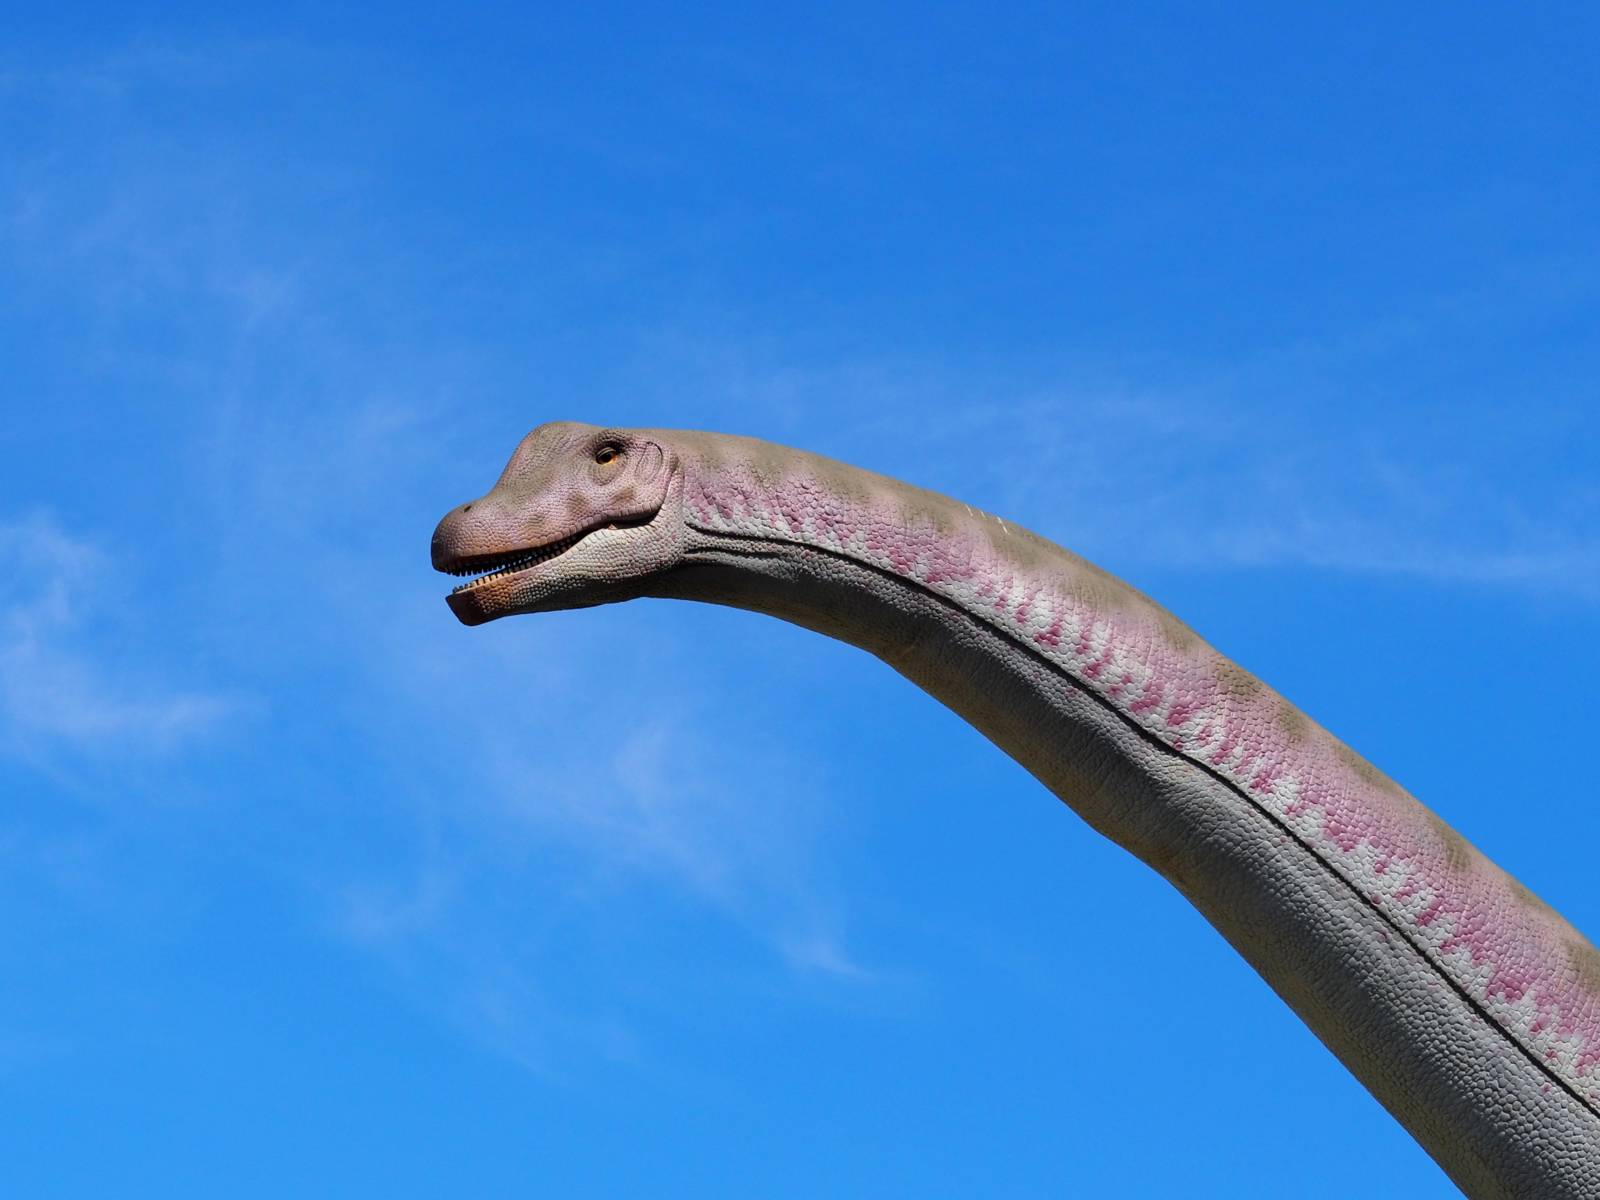 Vor blauem Himmel ragt der kleine Kopf eines Dinosauriers mit sehr langem Hals über dem Betrachter.